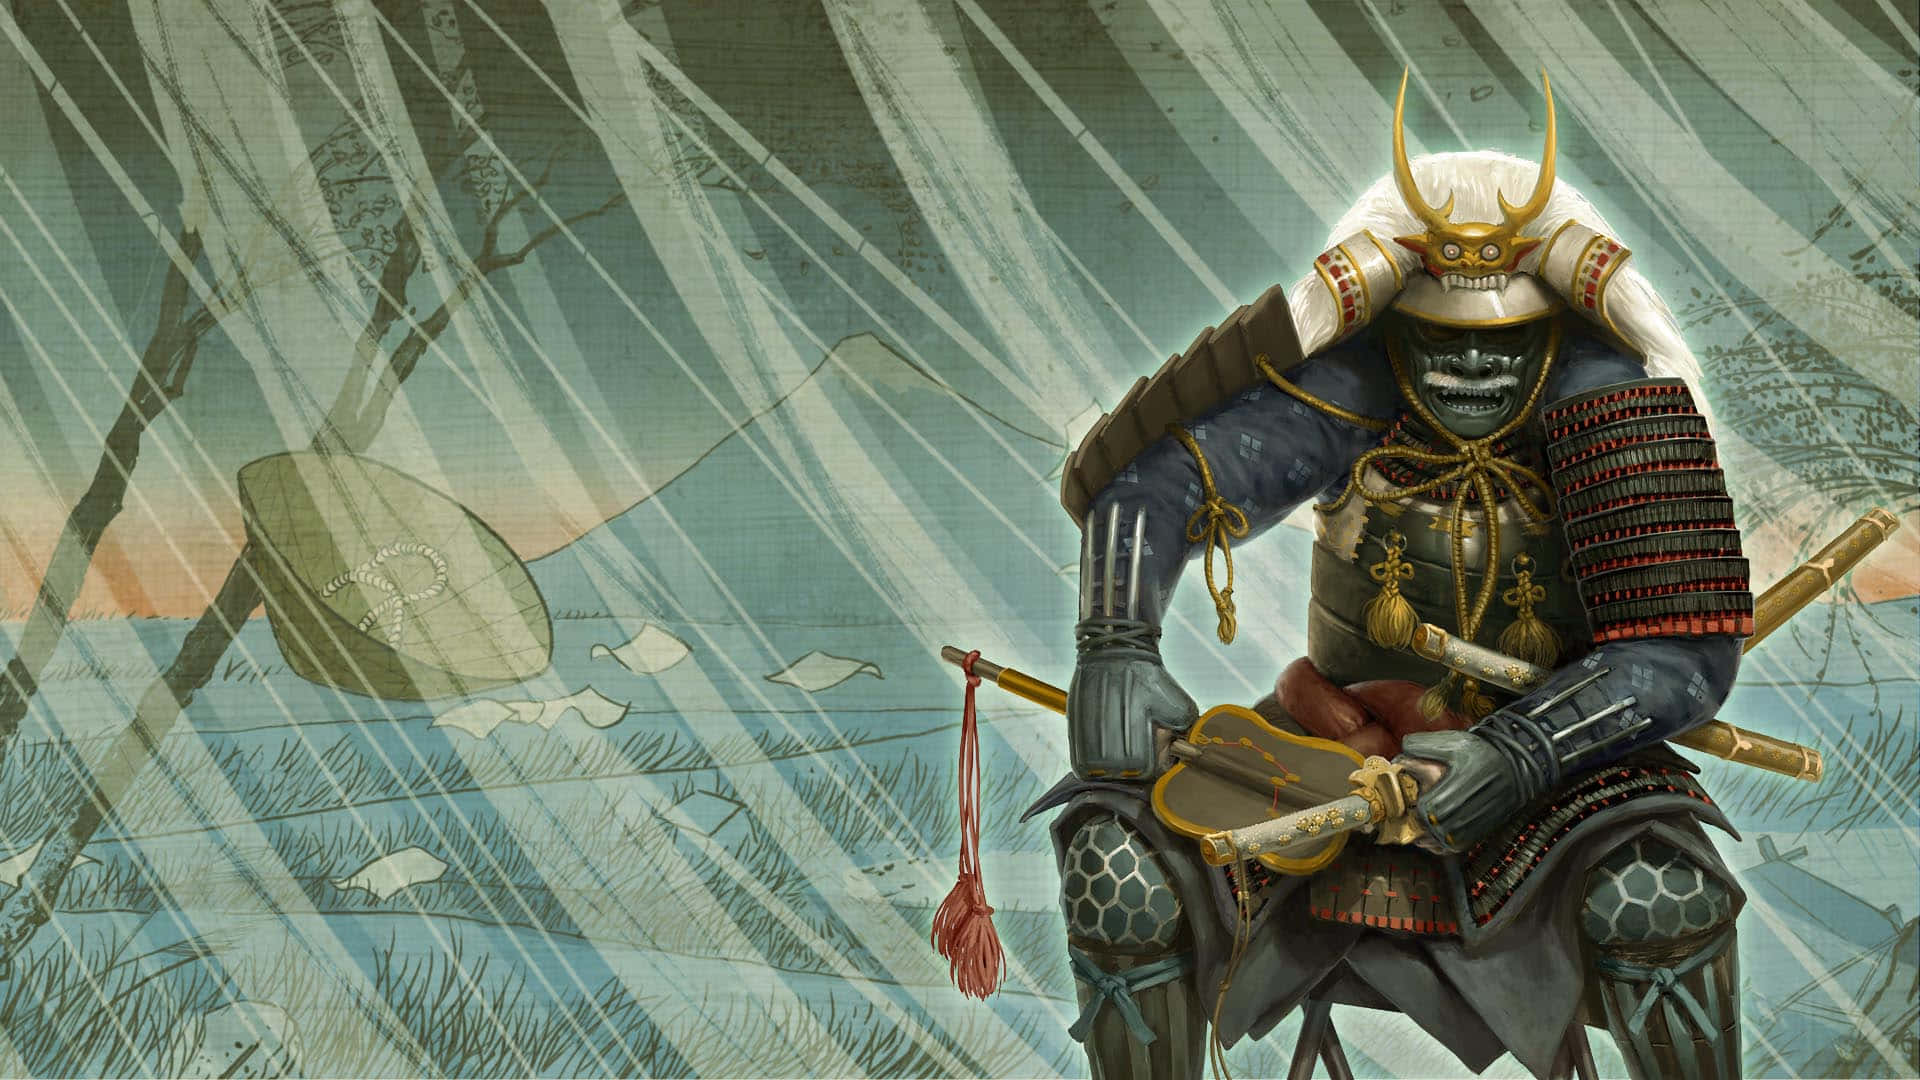 Conquistail Giappone Medievale Nel Miglior Epico Gioco Di Strategia, Total War: Shogun 2.